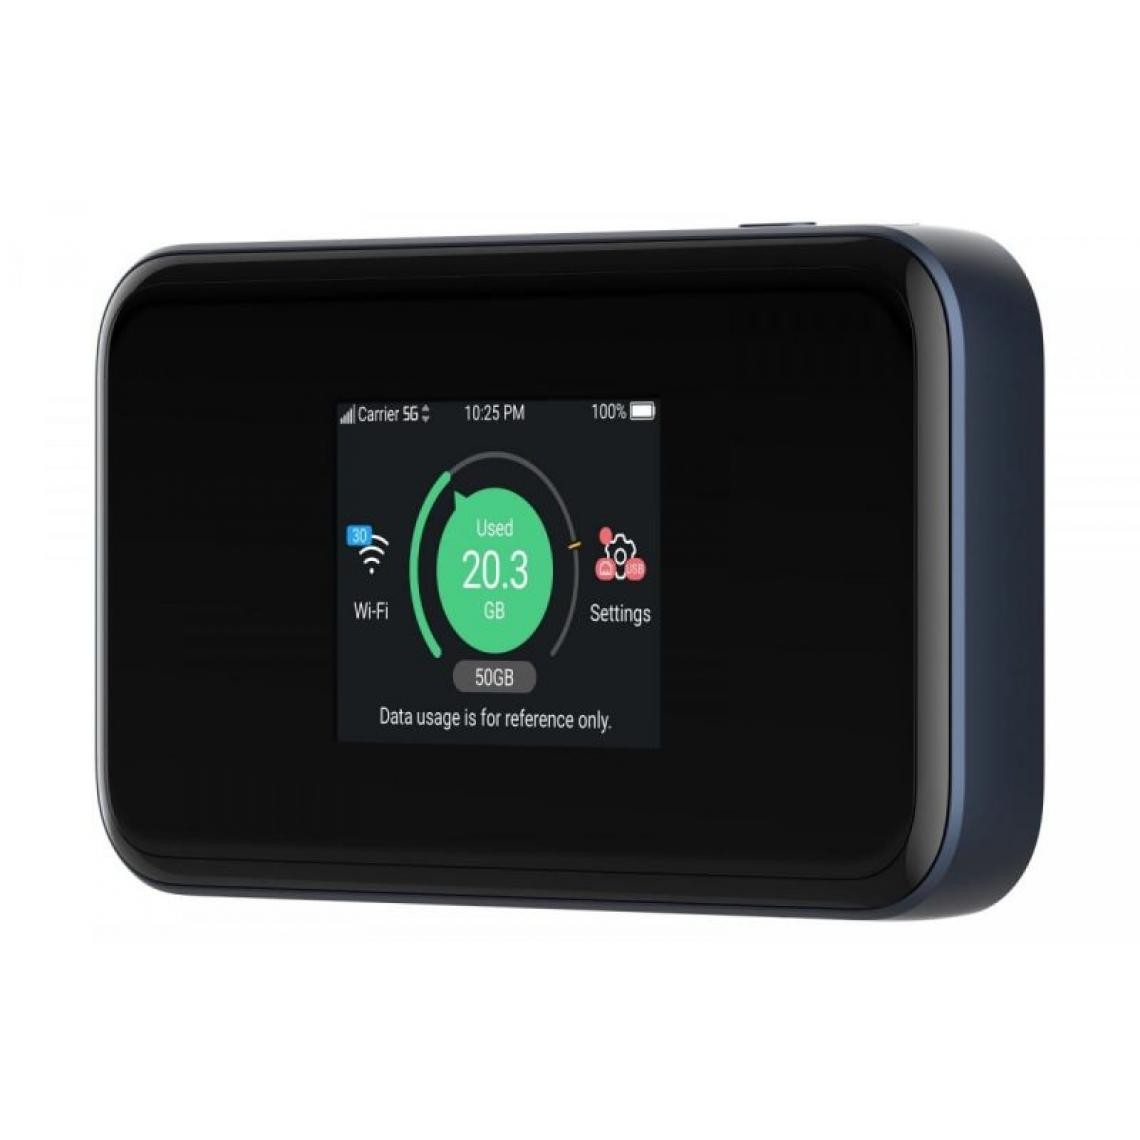 Inconnu - ZTE MU5001 Router Hotspot WiFi6 3800 Mbps 5G LTE Black - Modem / Routeur / Points d'accès